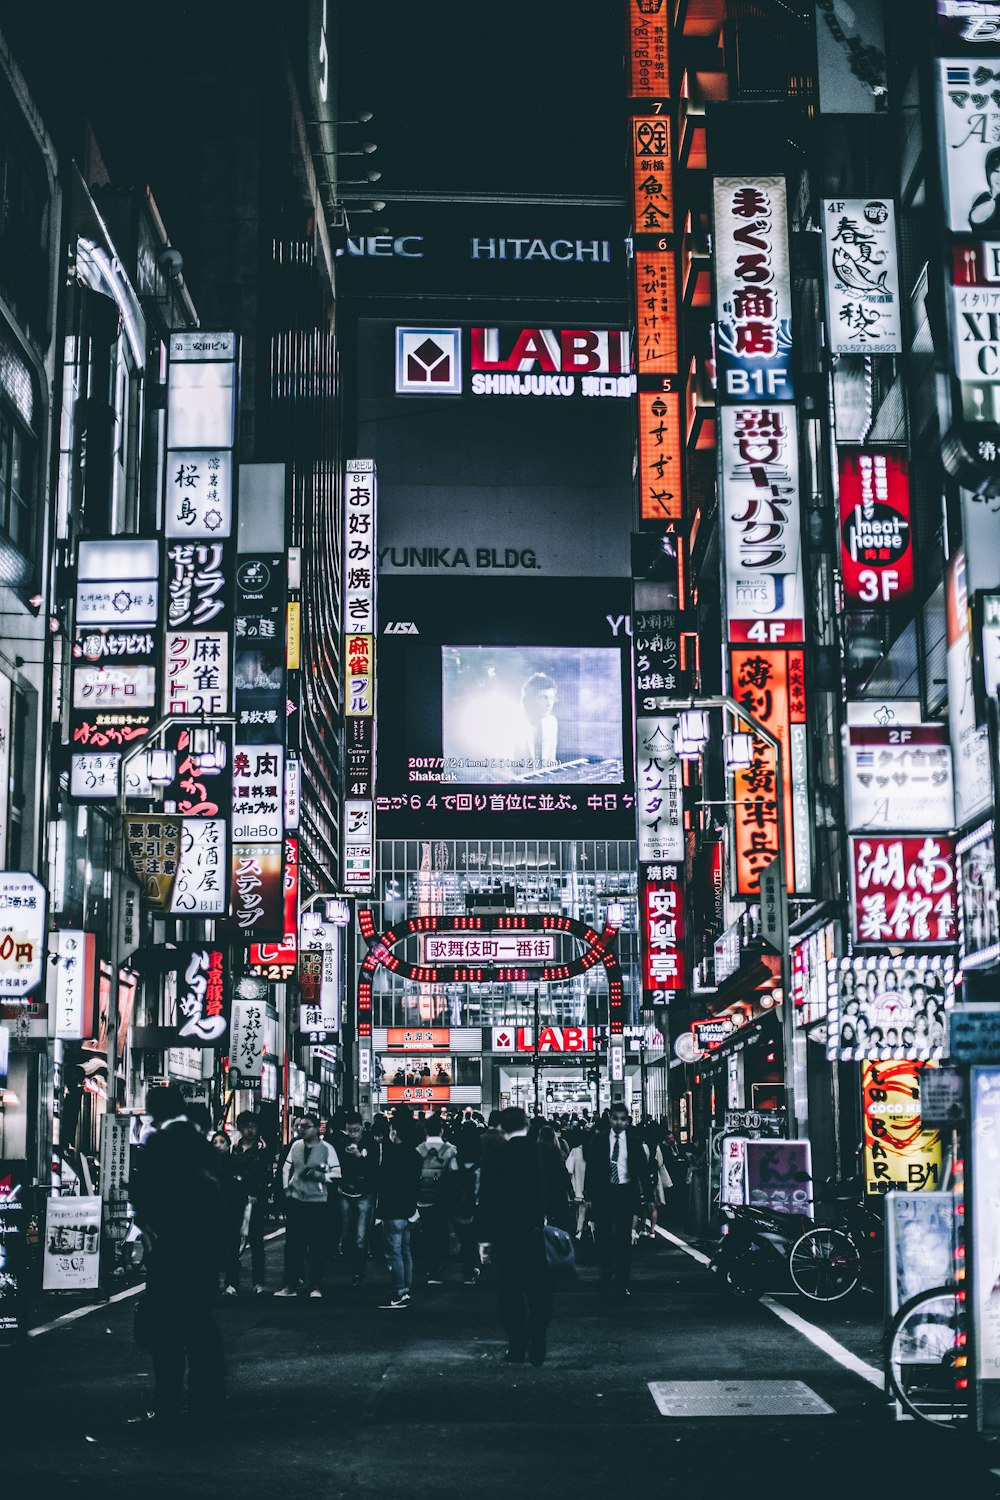 Nhật Bản, đêm: Dạo bước trên những con phố sáng lấp lánh trong đêm tại Nhật Bản và cảm nhận nhịp đập của thành phố vô cùng sôi động. Thưởng thức các khung cảnh đẹp lung linh và trải nghiệm sự khác biệt của văn hóa đêm Nhật Bản.